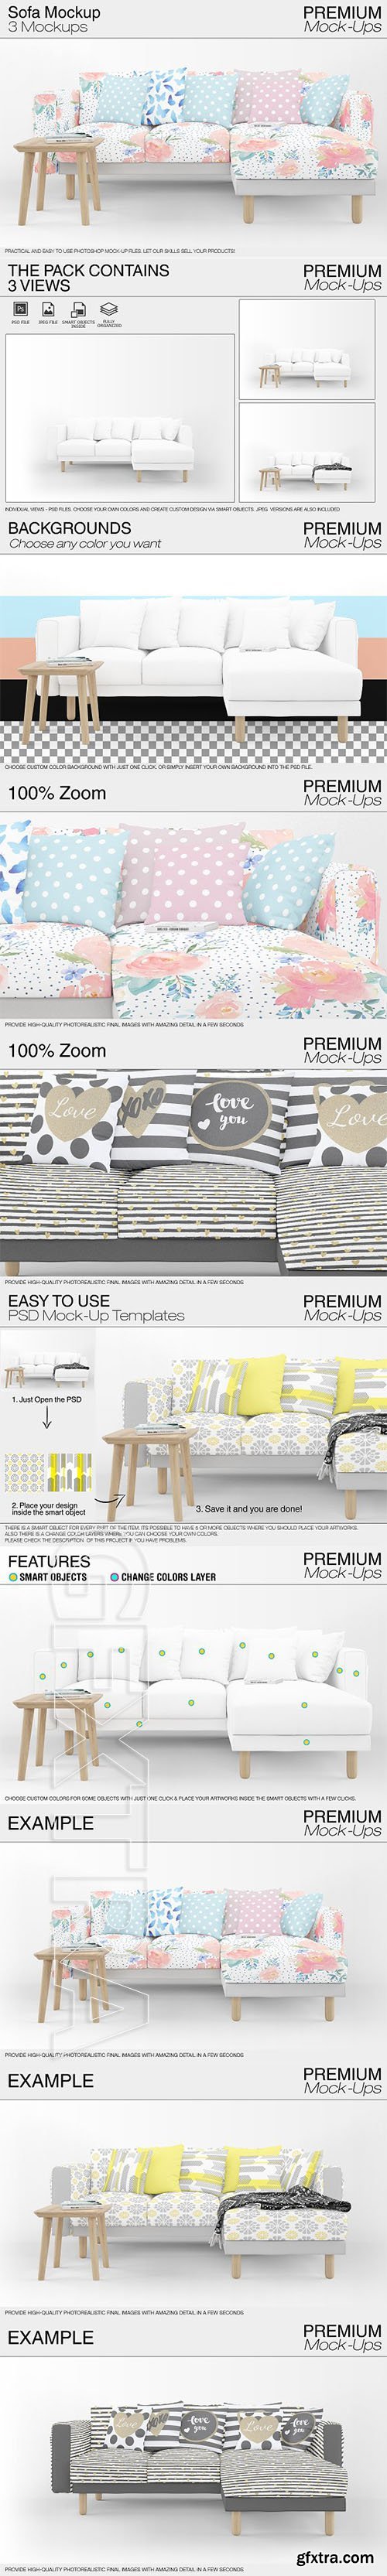 CreativeMarket - Sofa & Pillows Mockup Pack 2162737